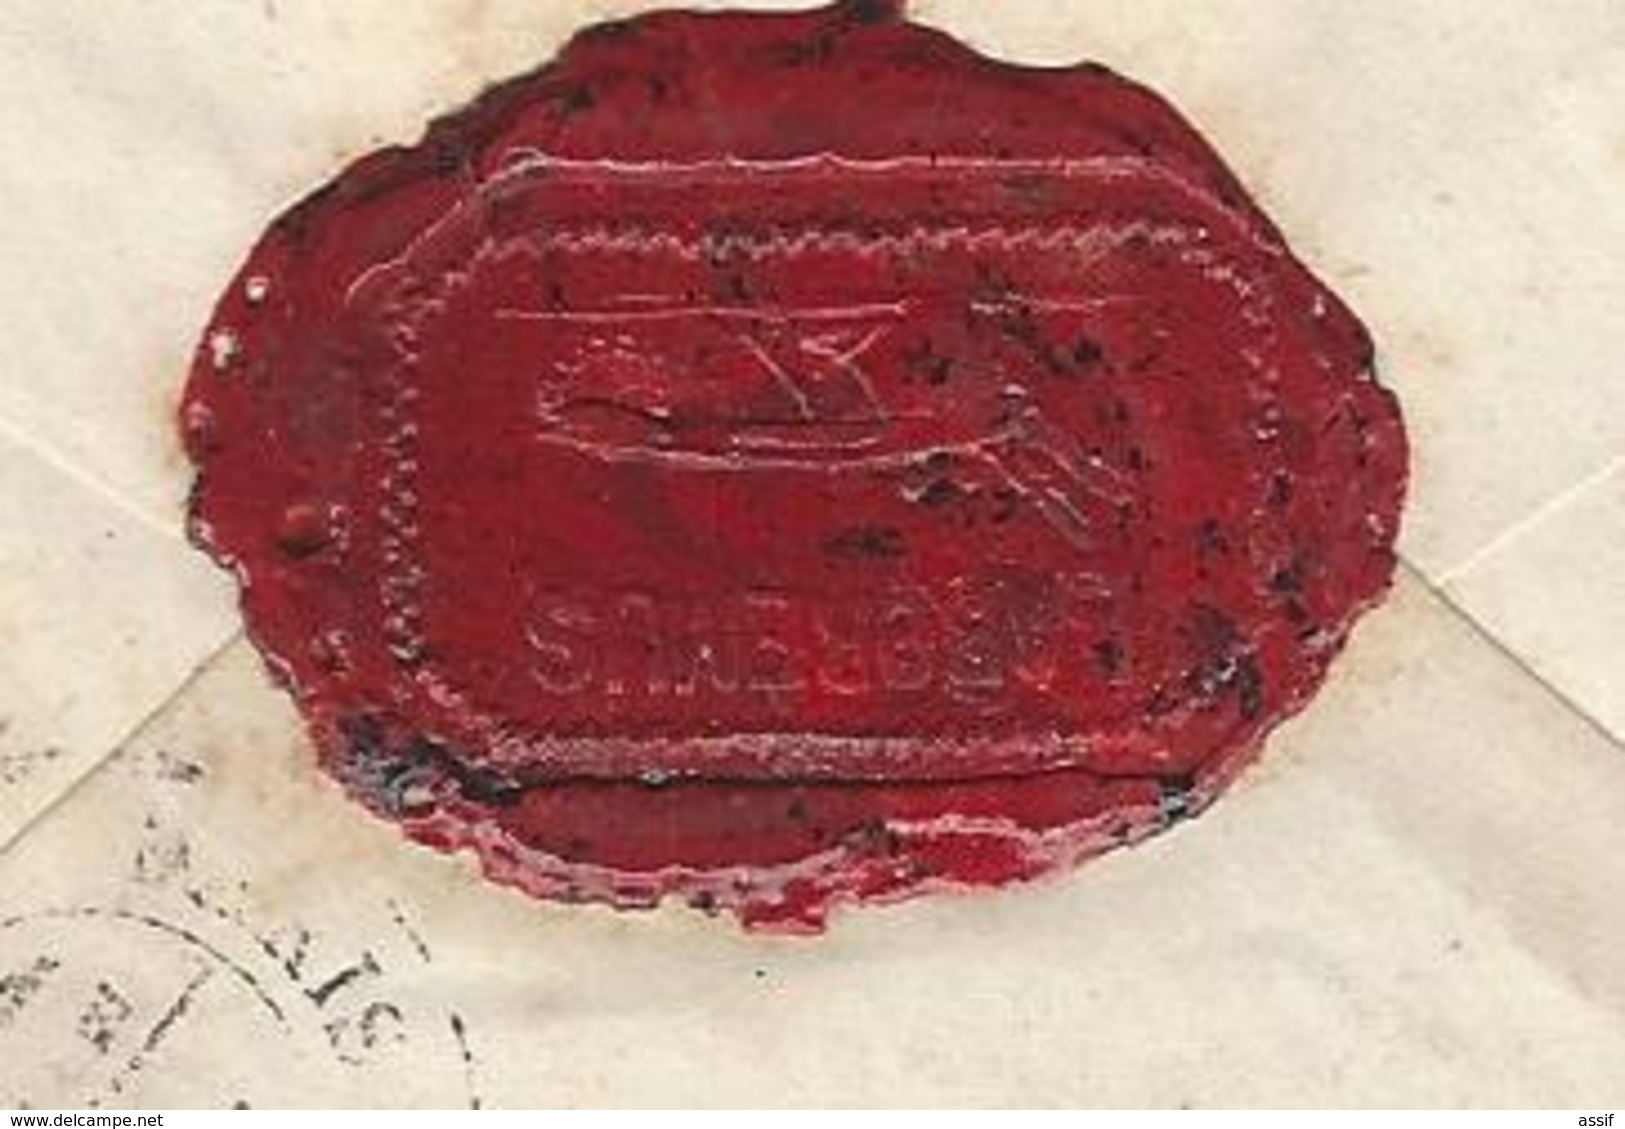 JEAN  BASSO ( Secrétaire Garibaldi ) 5 lettres 1877/78 à Bordone ( + copie à Basso ) Maddalena cad Bastia Italie 1878